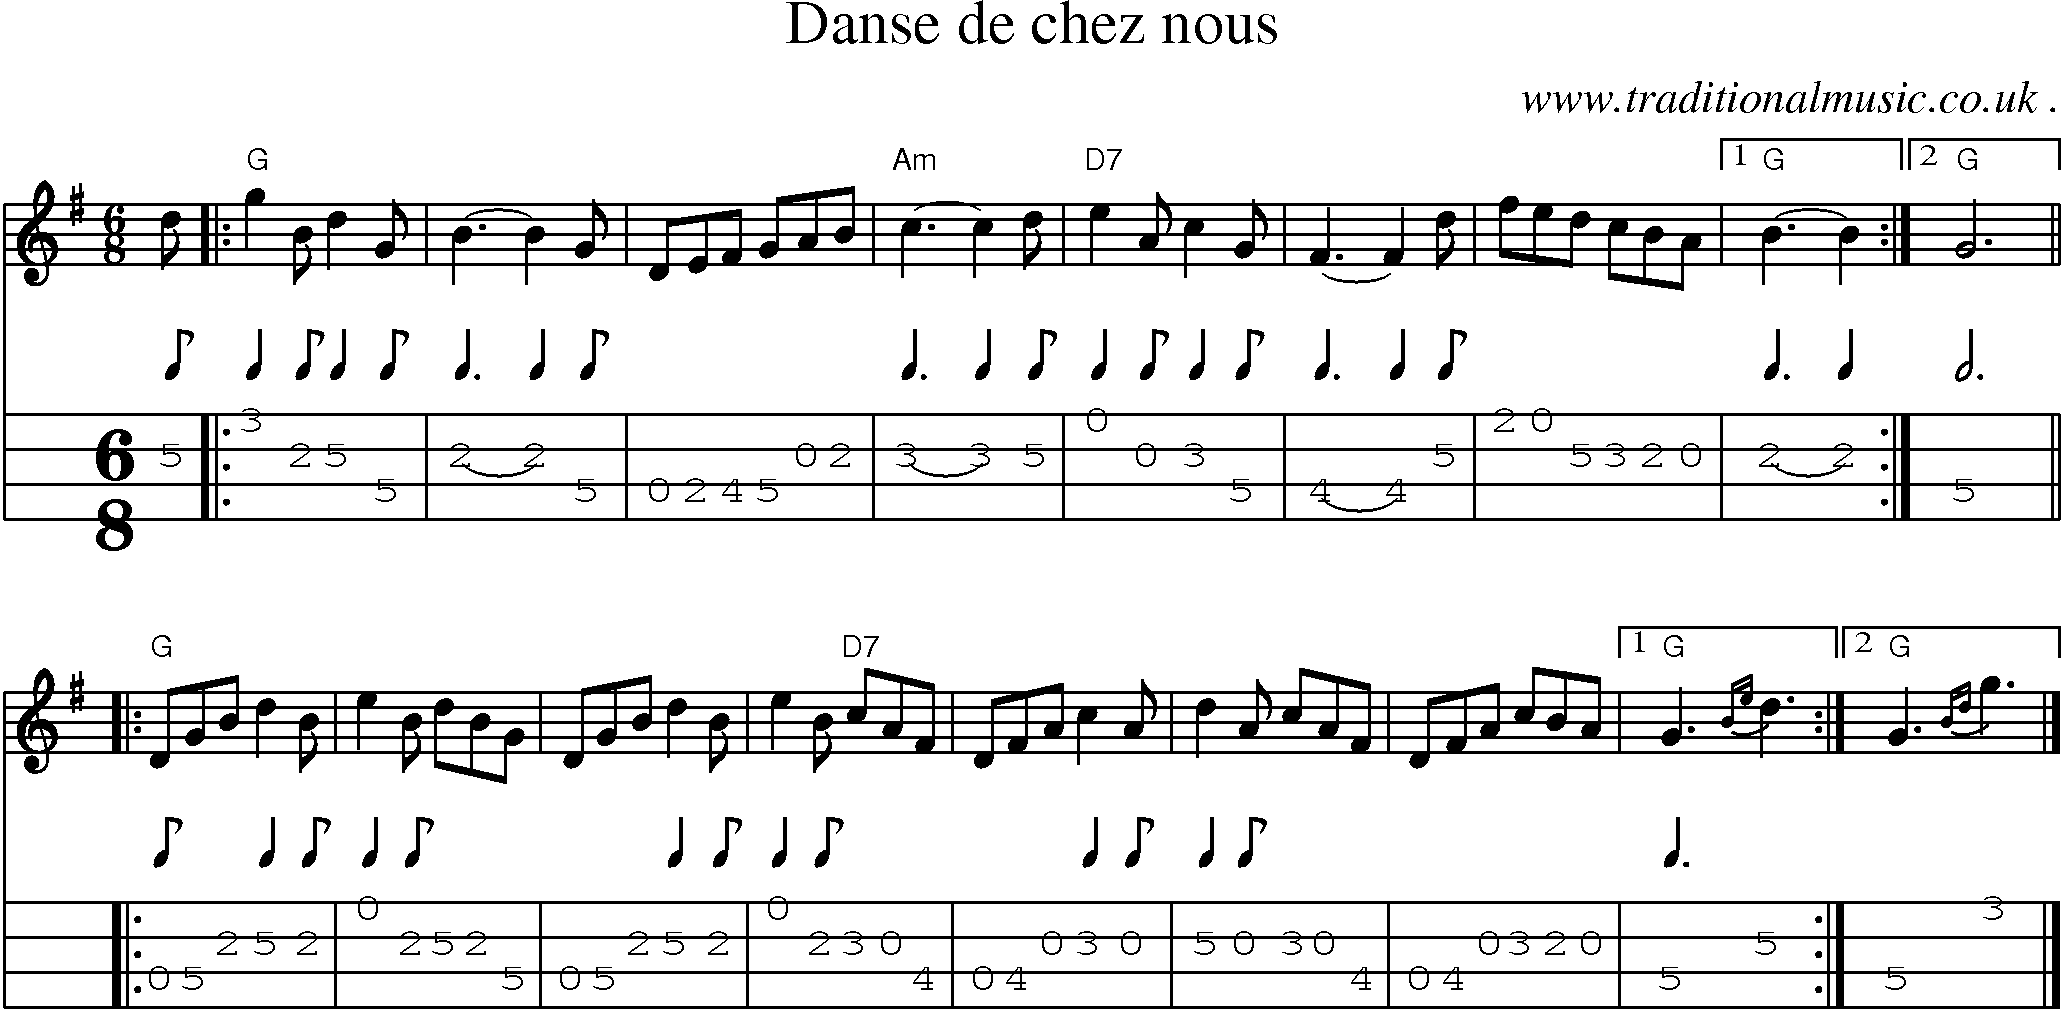 Sheet-music  score, Chords and Mandolin Tabs for Danse De Chez Nous